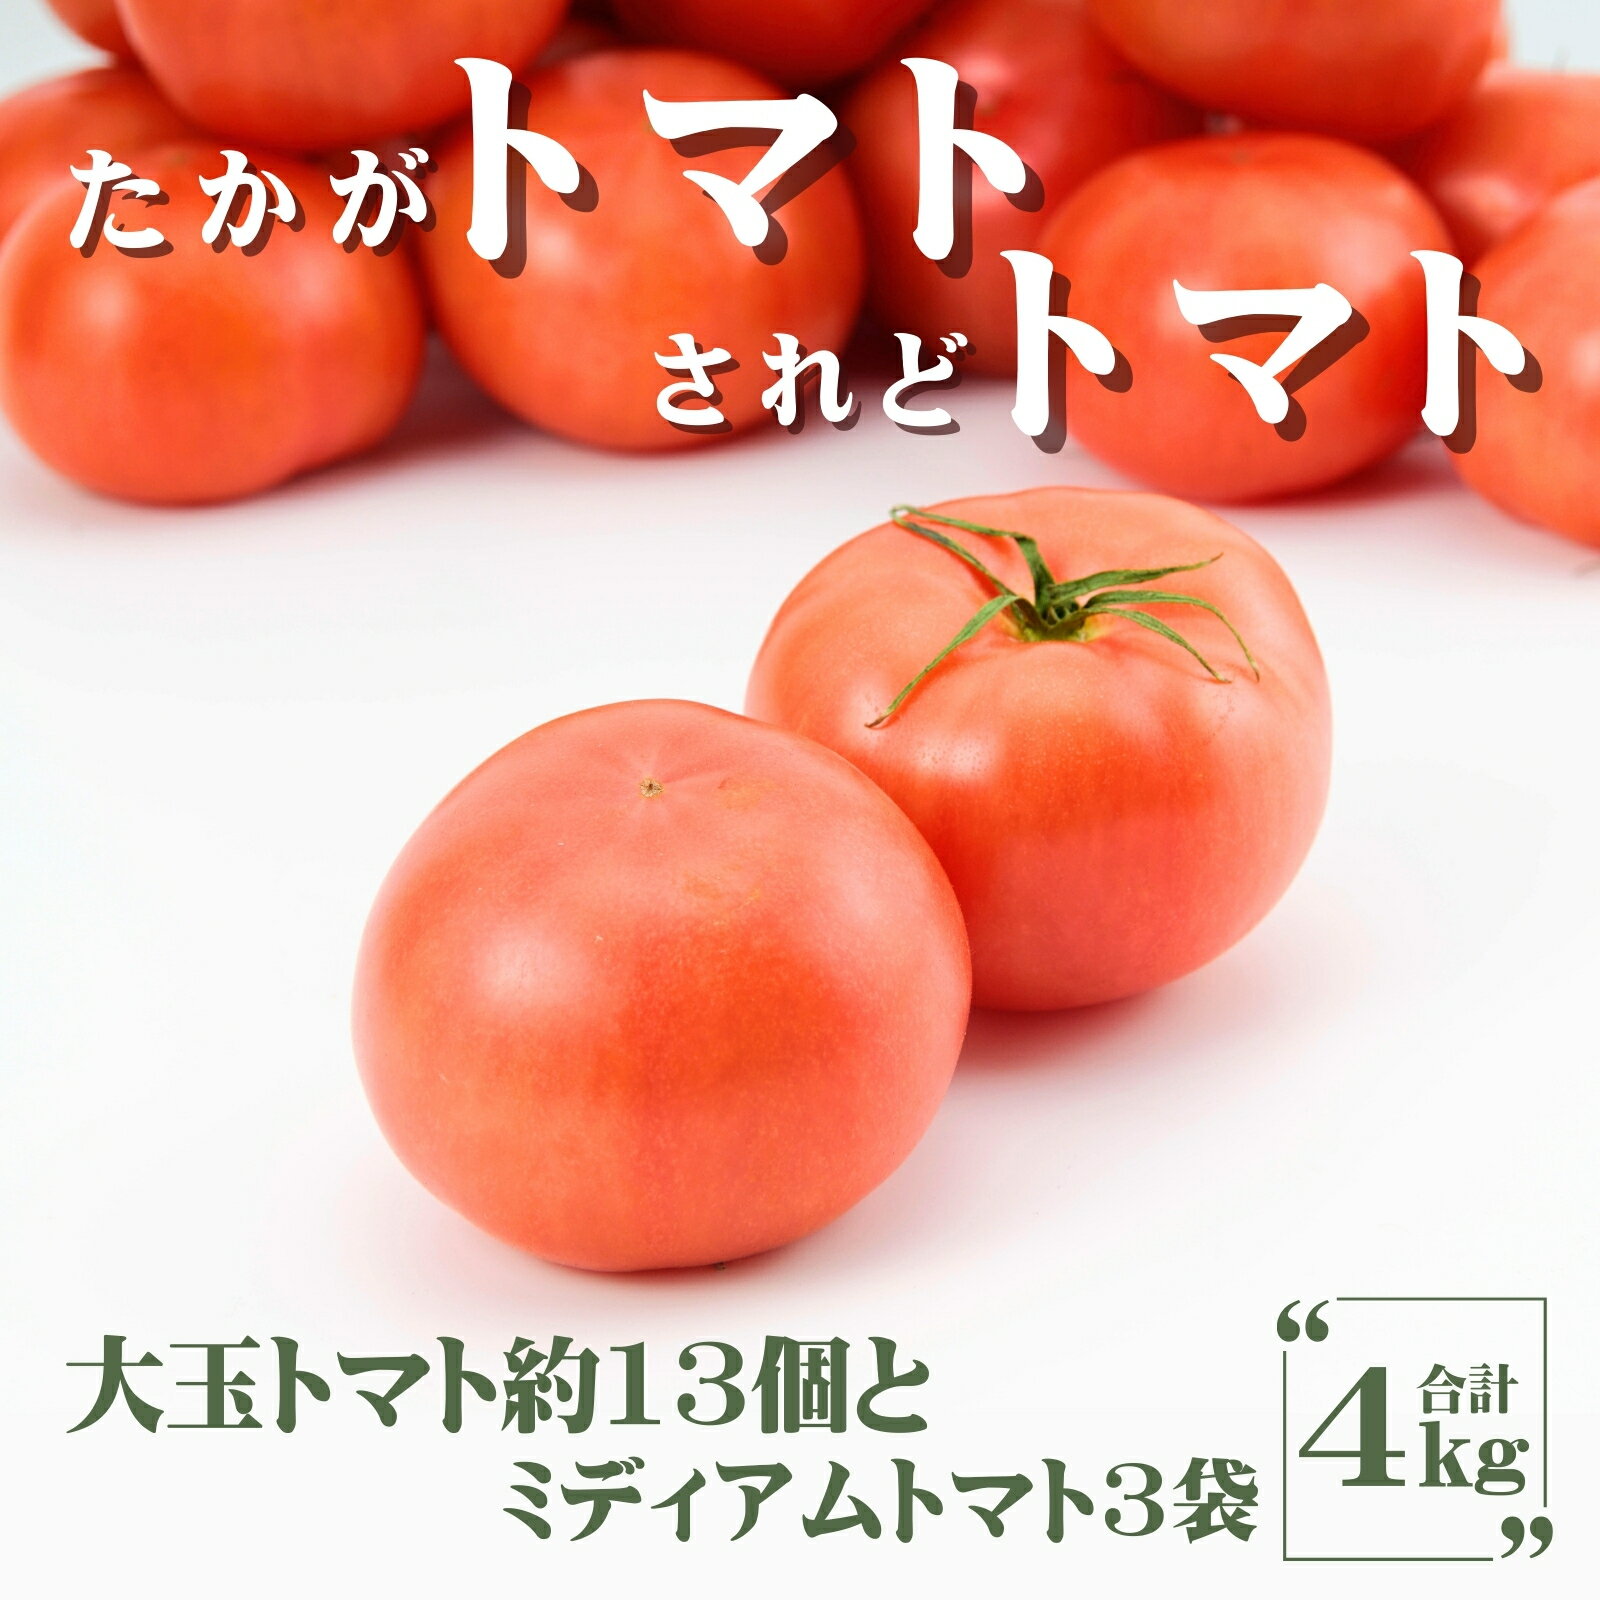 田中農園自慢のトマト4kg